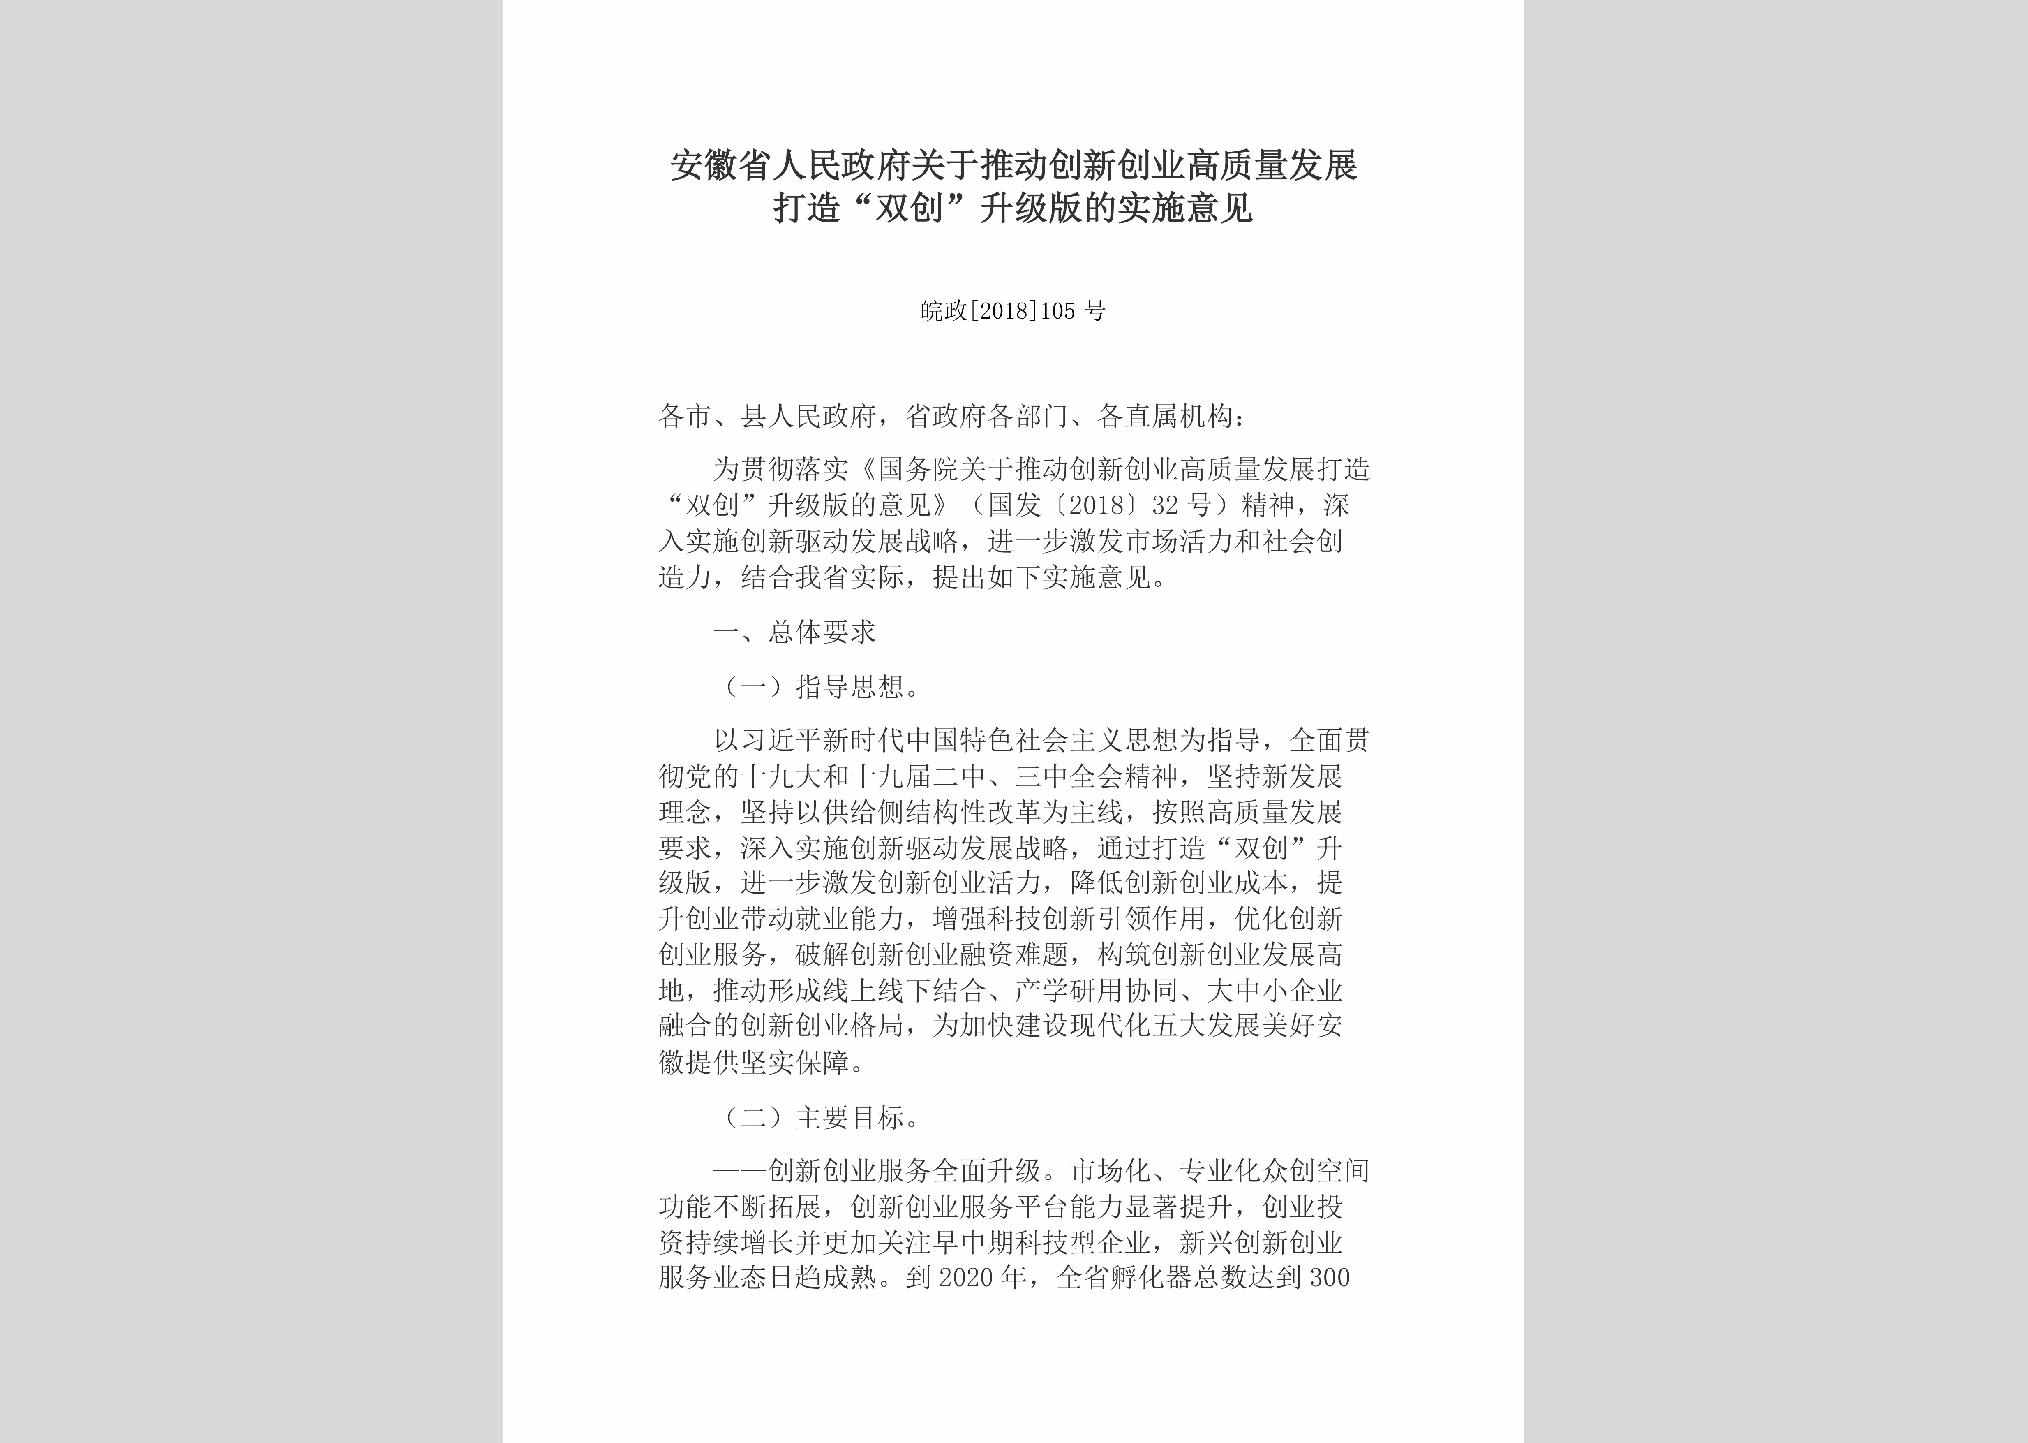 皖政[2018]105号：安徽省人民政府关于推动创新创业高质量发展打造“双创”升级版的实施意见